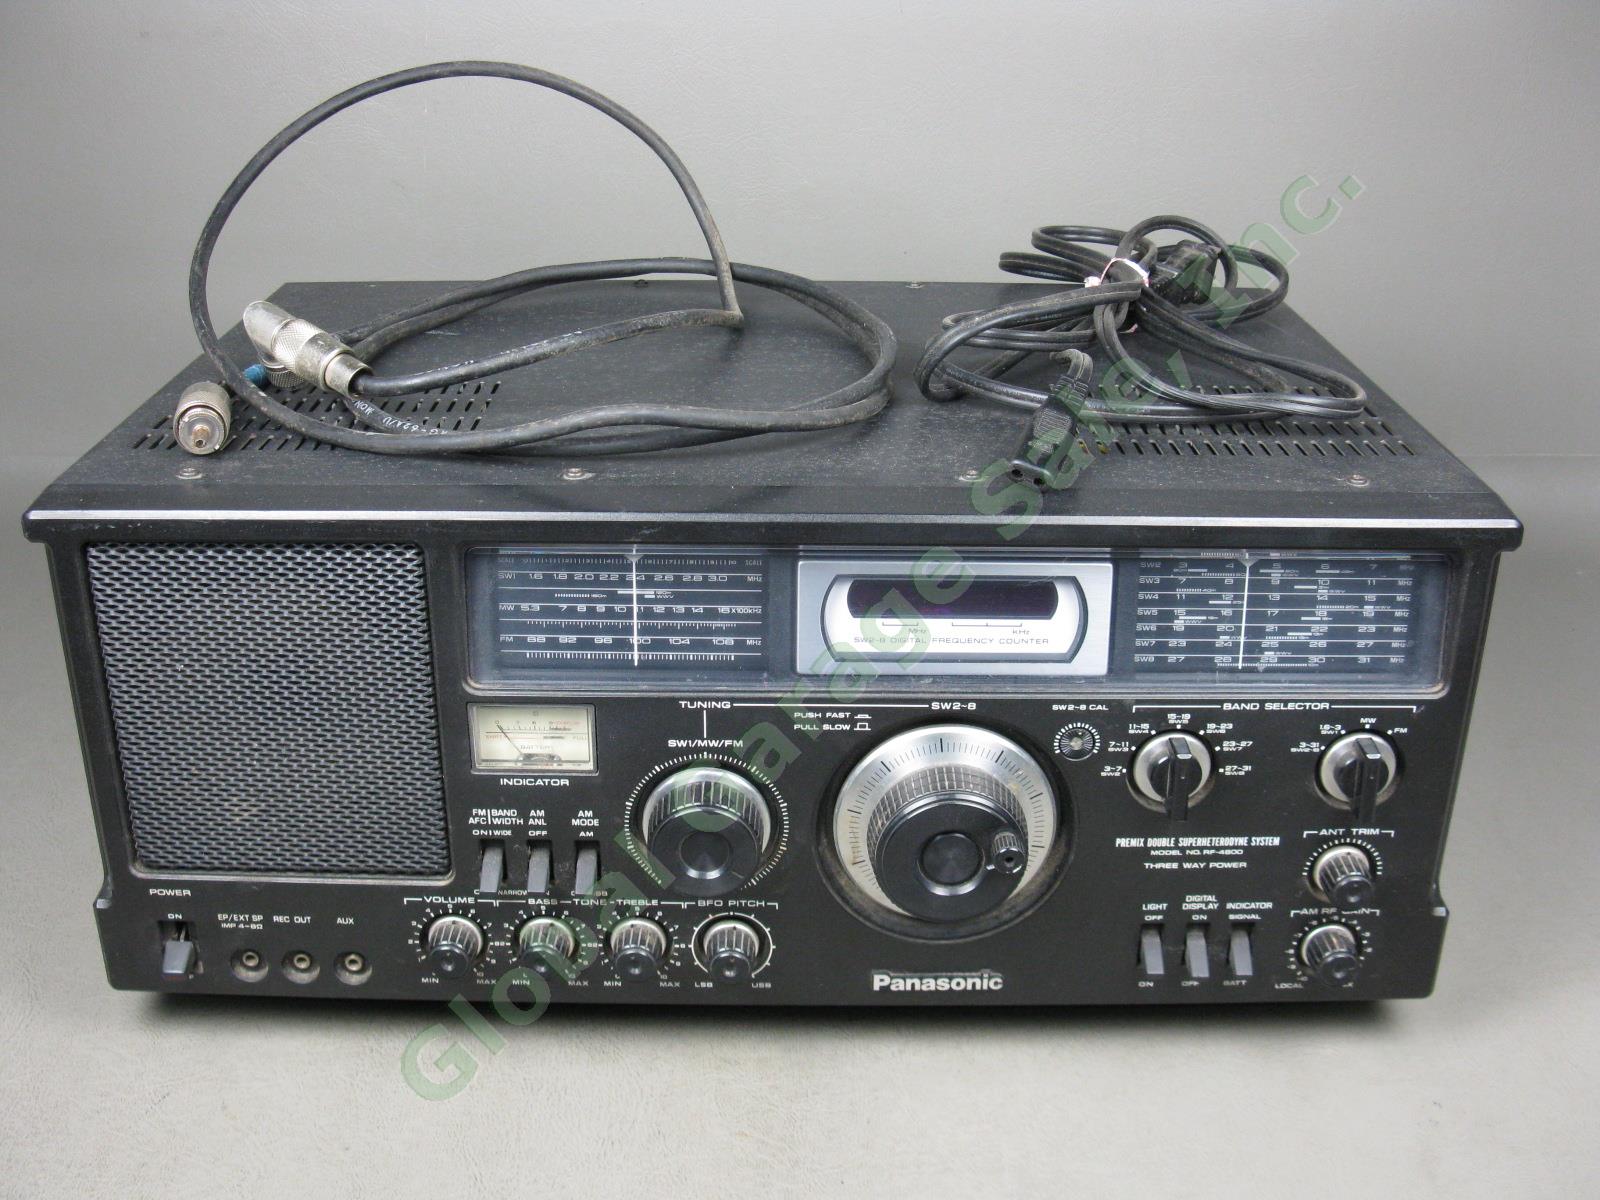 Panasonic RF-4800 FM-AM-SSB-CW 10-Band Shortwave Radio Communication Receiver NR